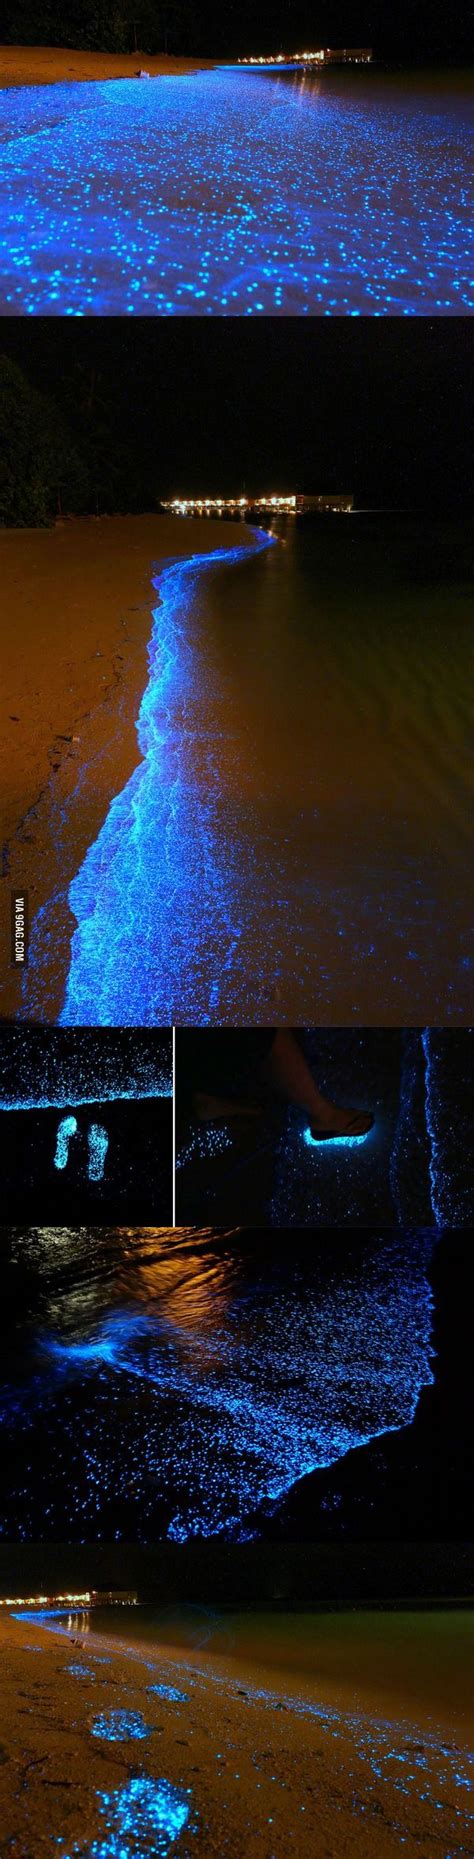 Magical Bioluminescent Phytoplankton At Maldives Beach